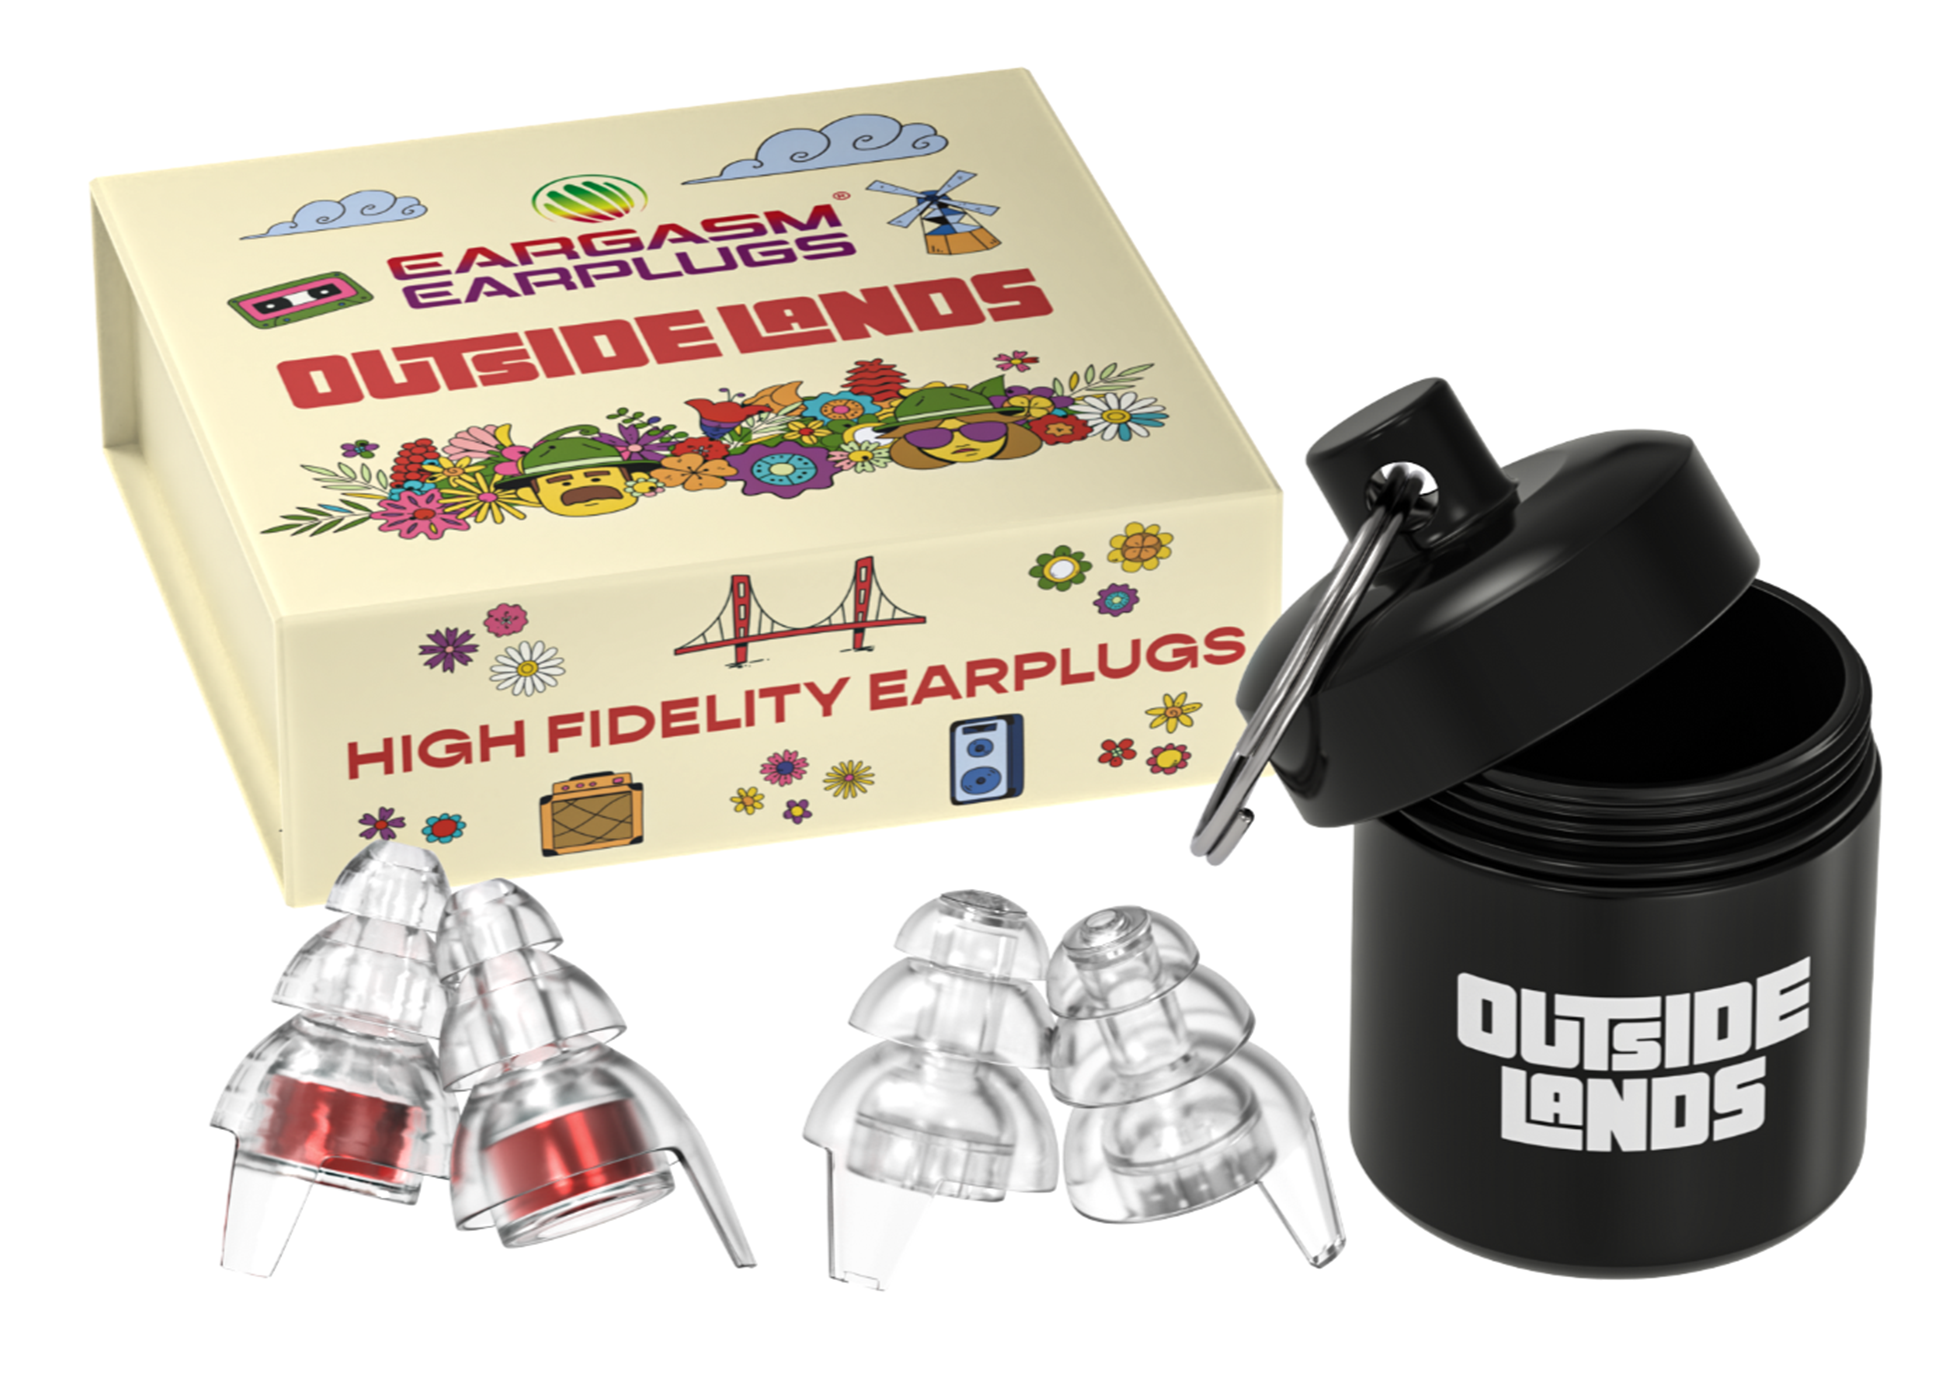 High Fidelity Earplugs: Outside Lands Edition